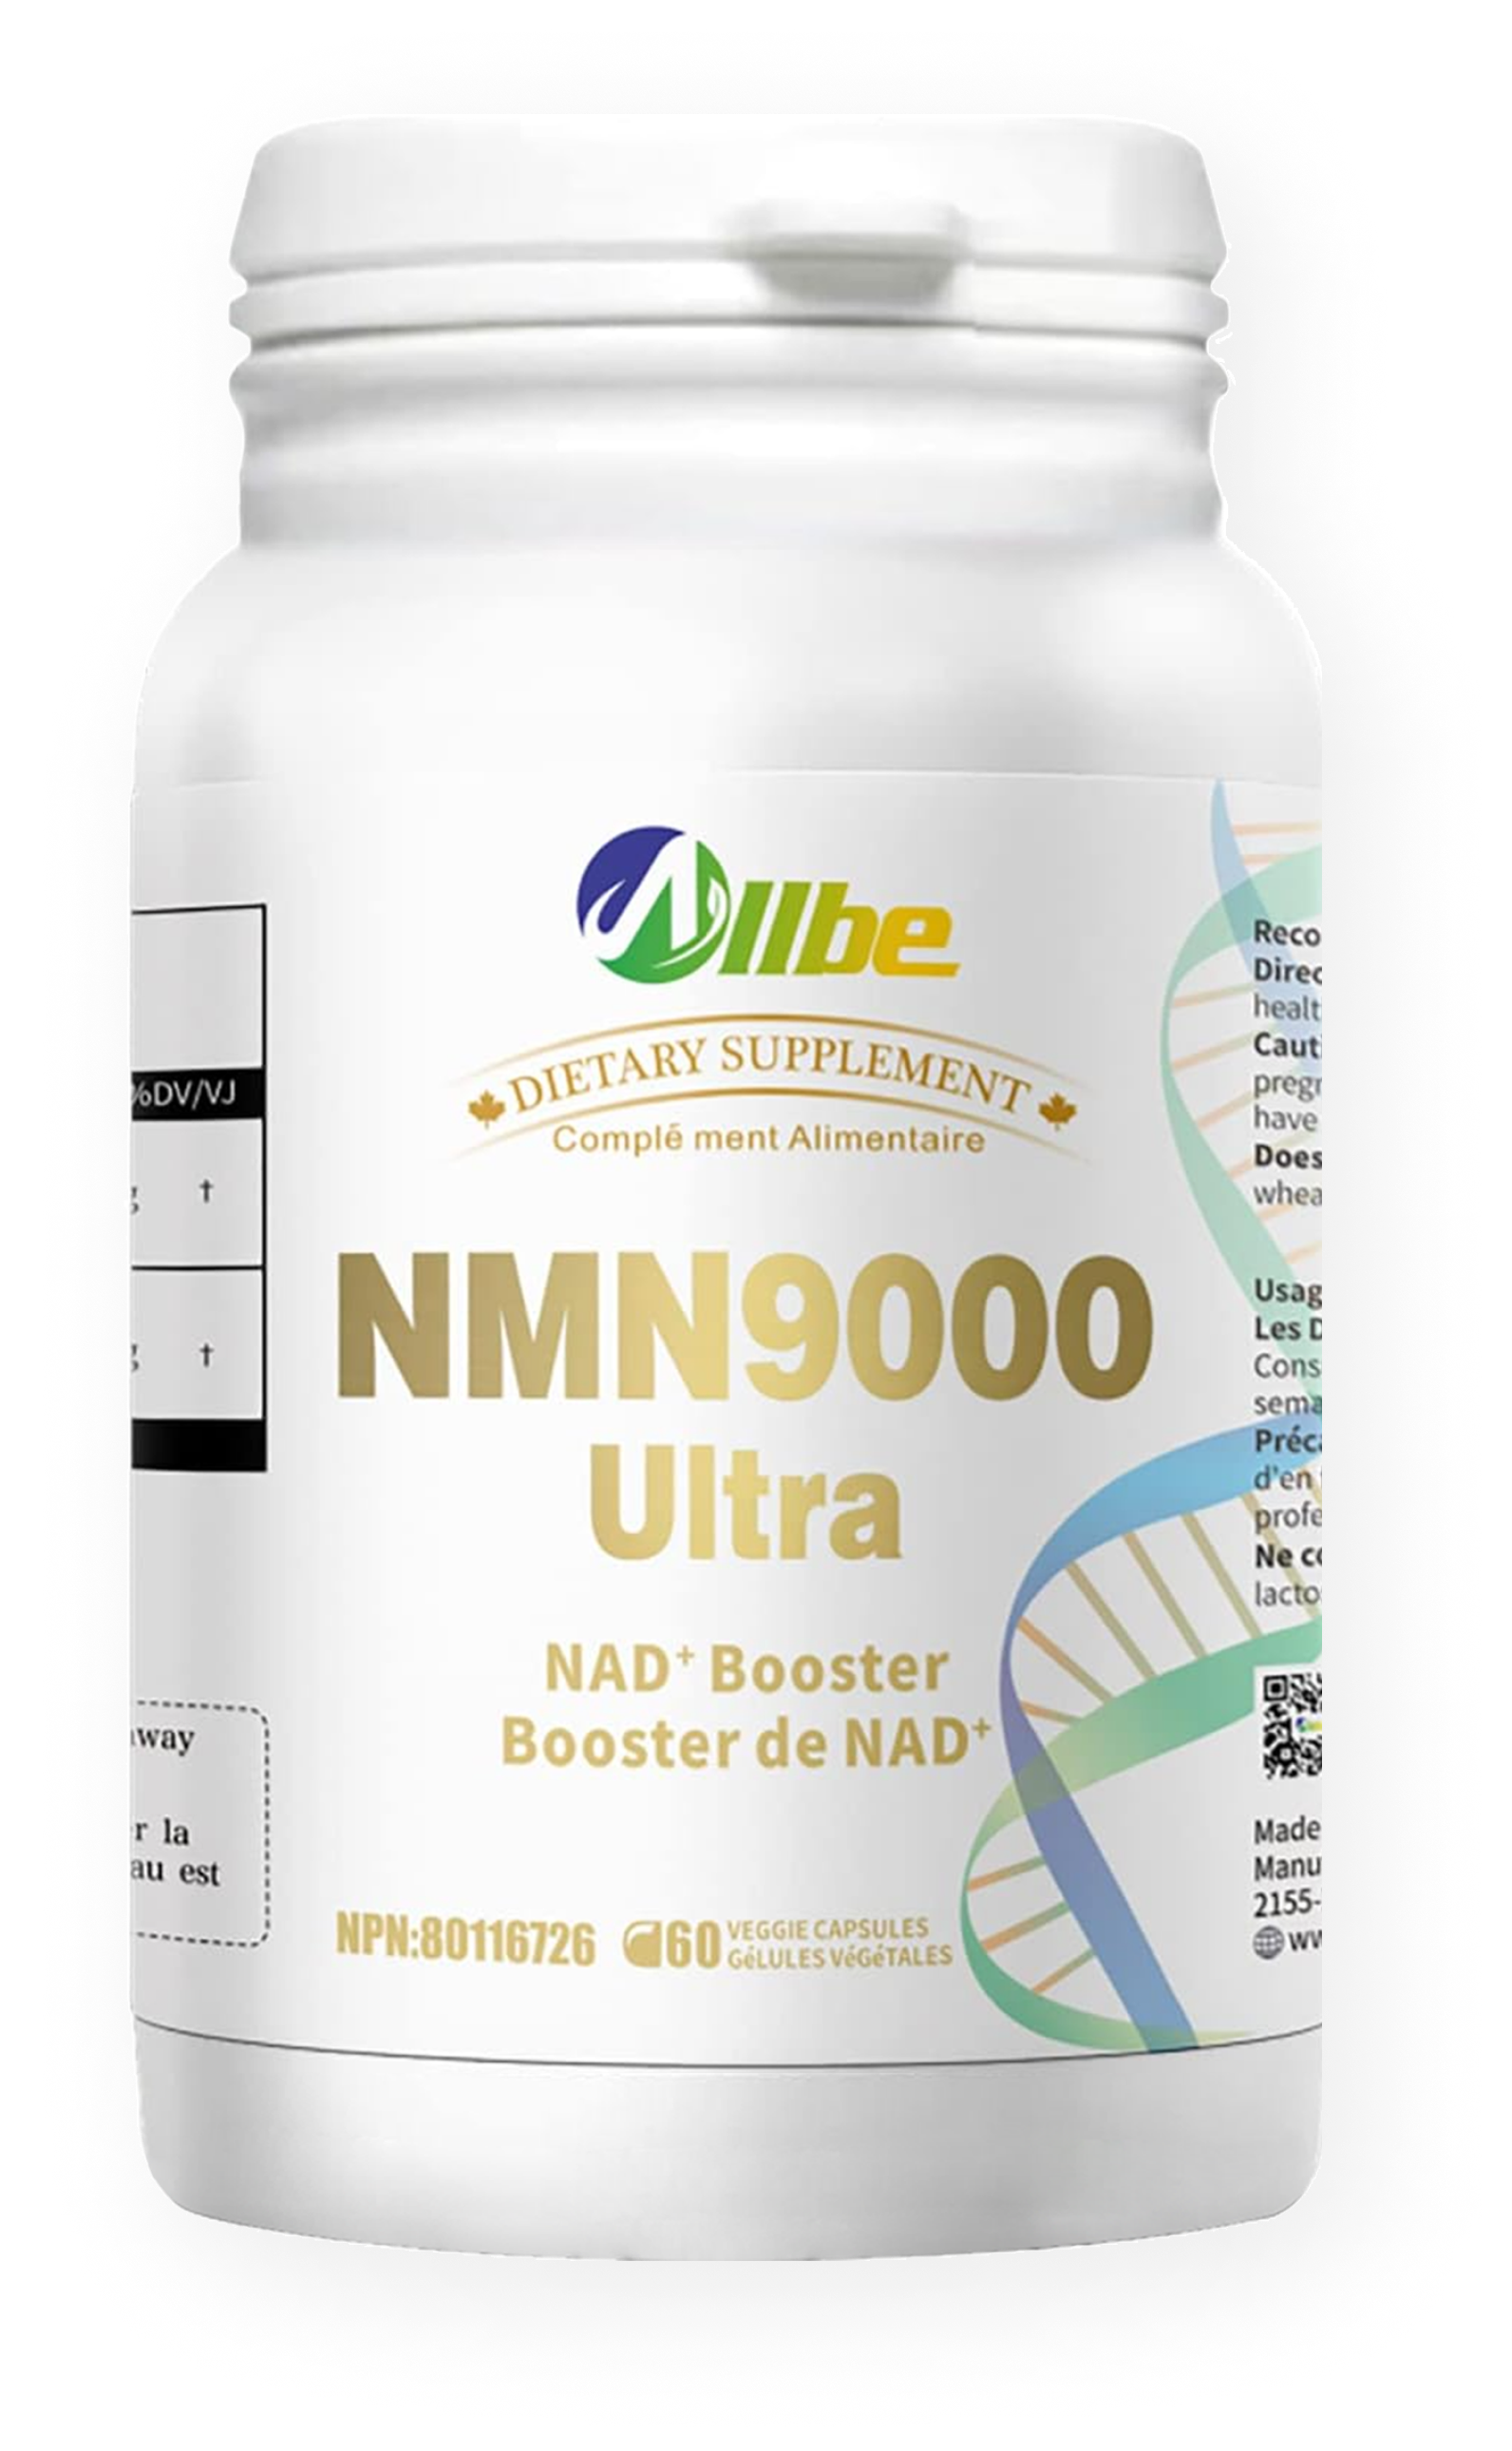 NMN9000 capsules